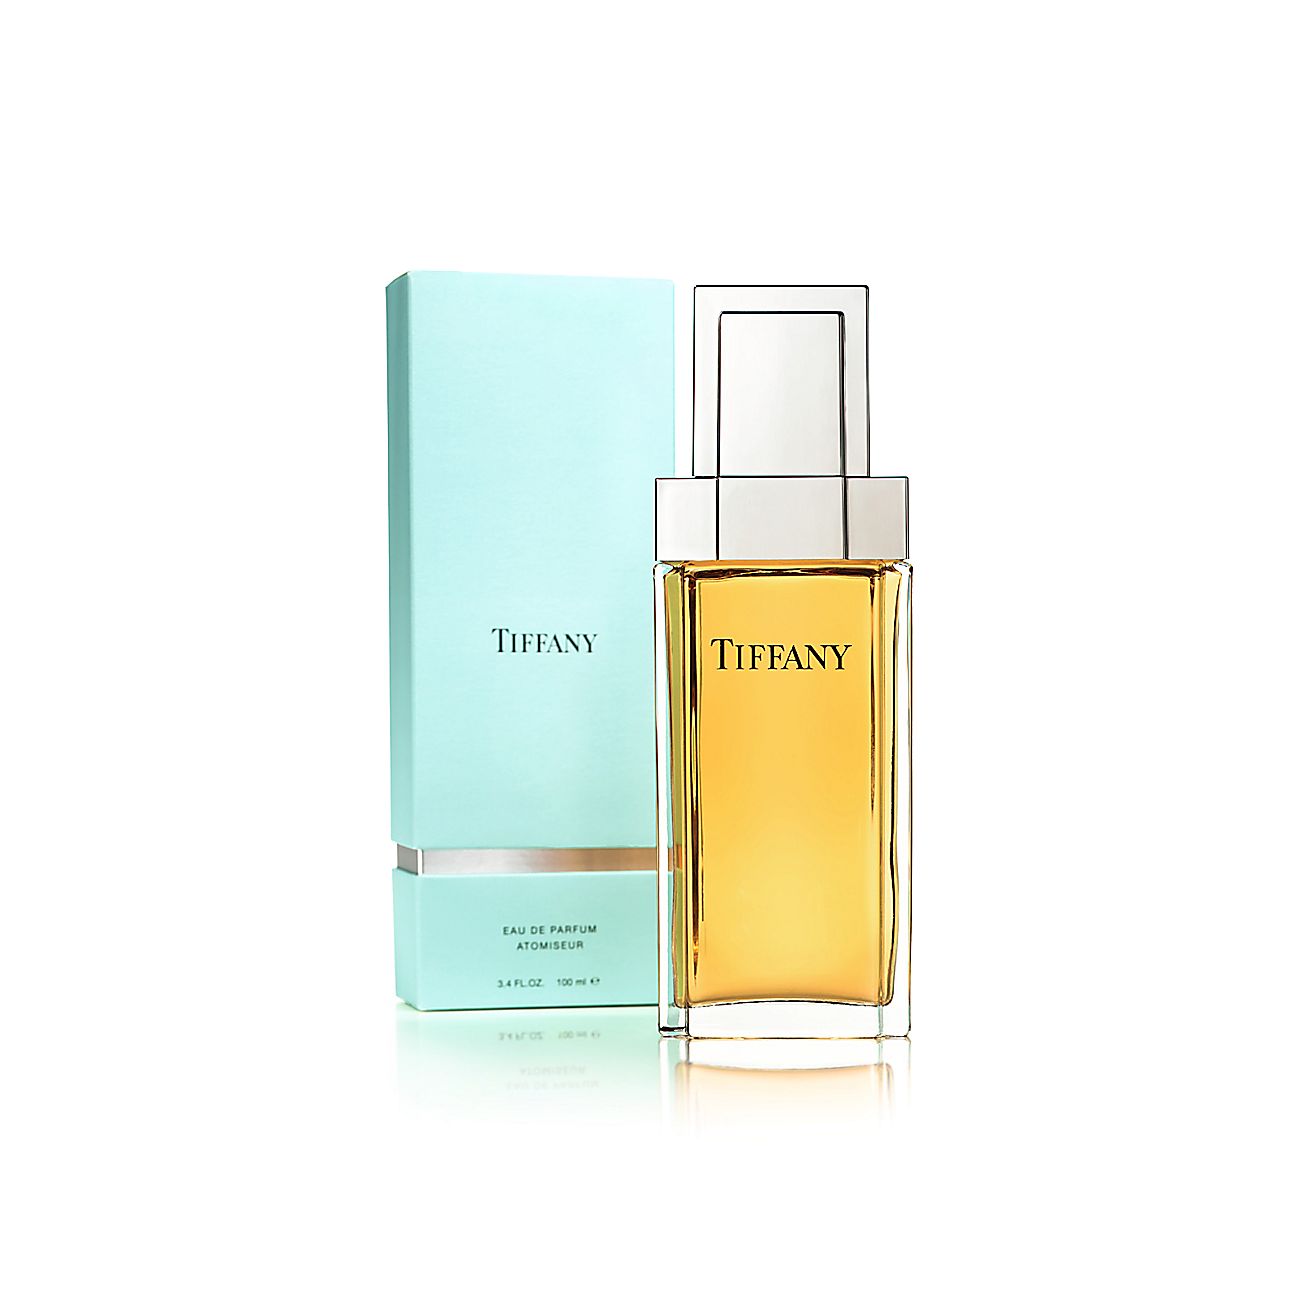 Tiffany Eau de Parfum atomiseur, 3.4 ounces. | Tiffany & Co.